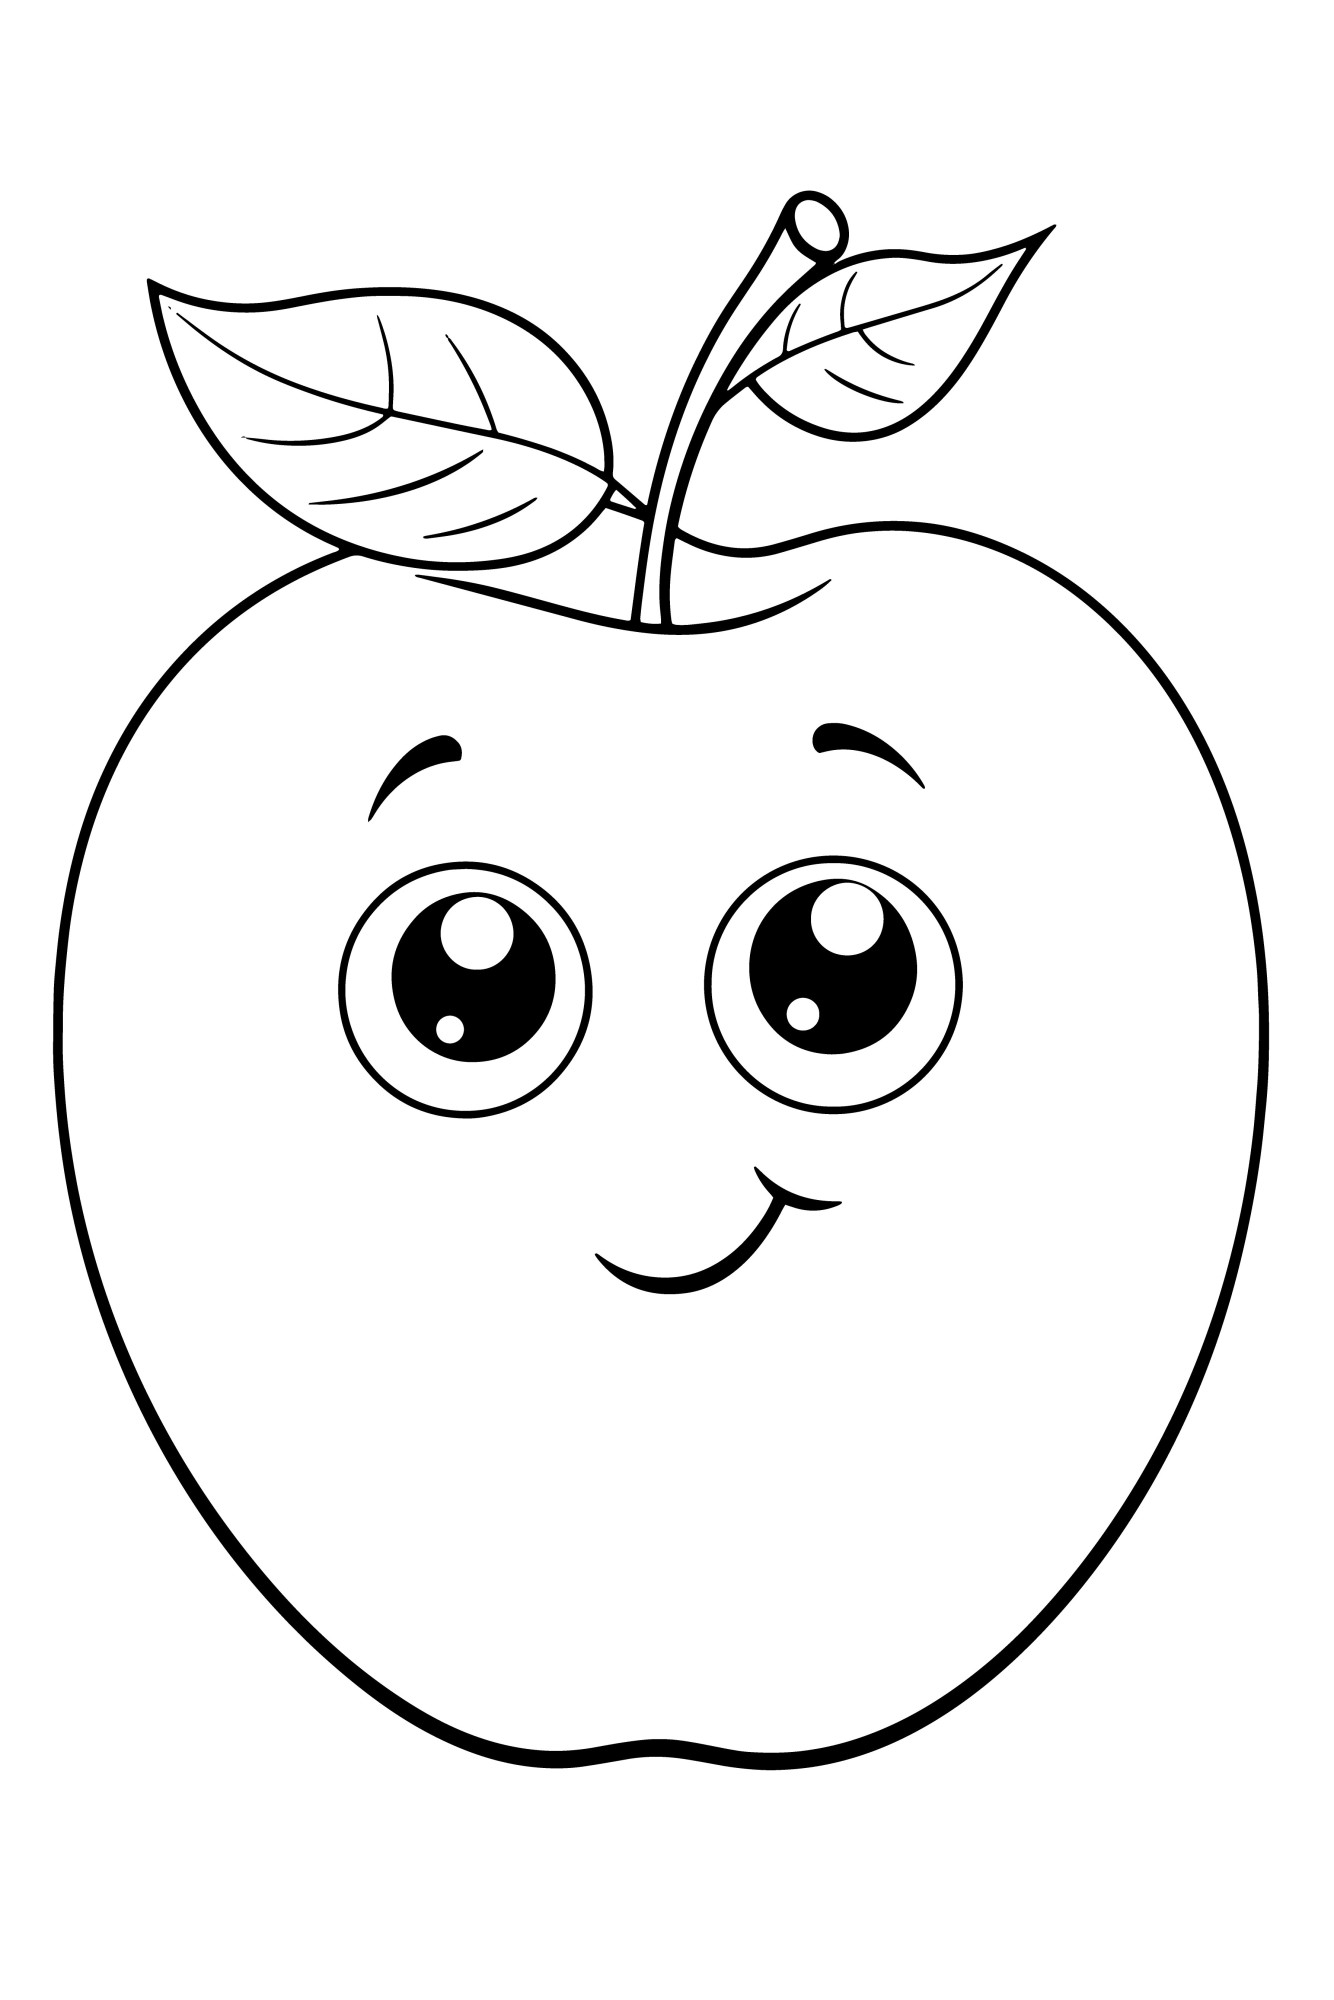 Раскраска для детей: мультяшное яблоко с глазами и улыбкой